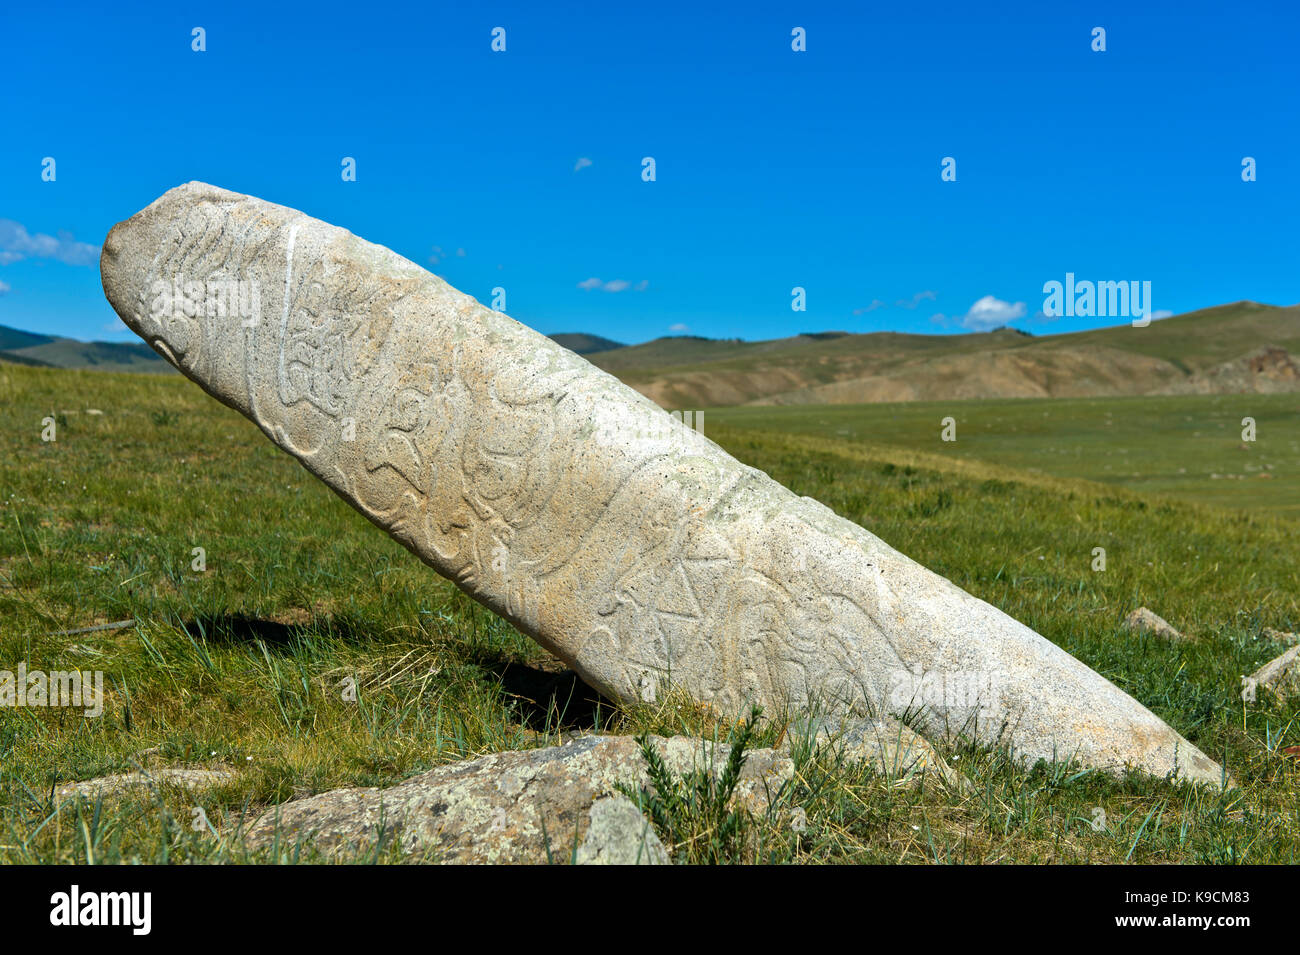 Civiltà Megalitica chiamato cervi decorata in pietra di un antico luogo di sepoltura dall'età del bronzo, Khangai Nuruu national park, oevoerkhangai aimag, Mongolia Foto Stock